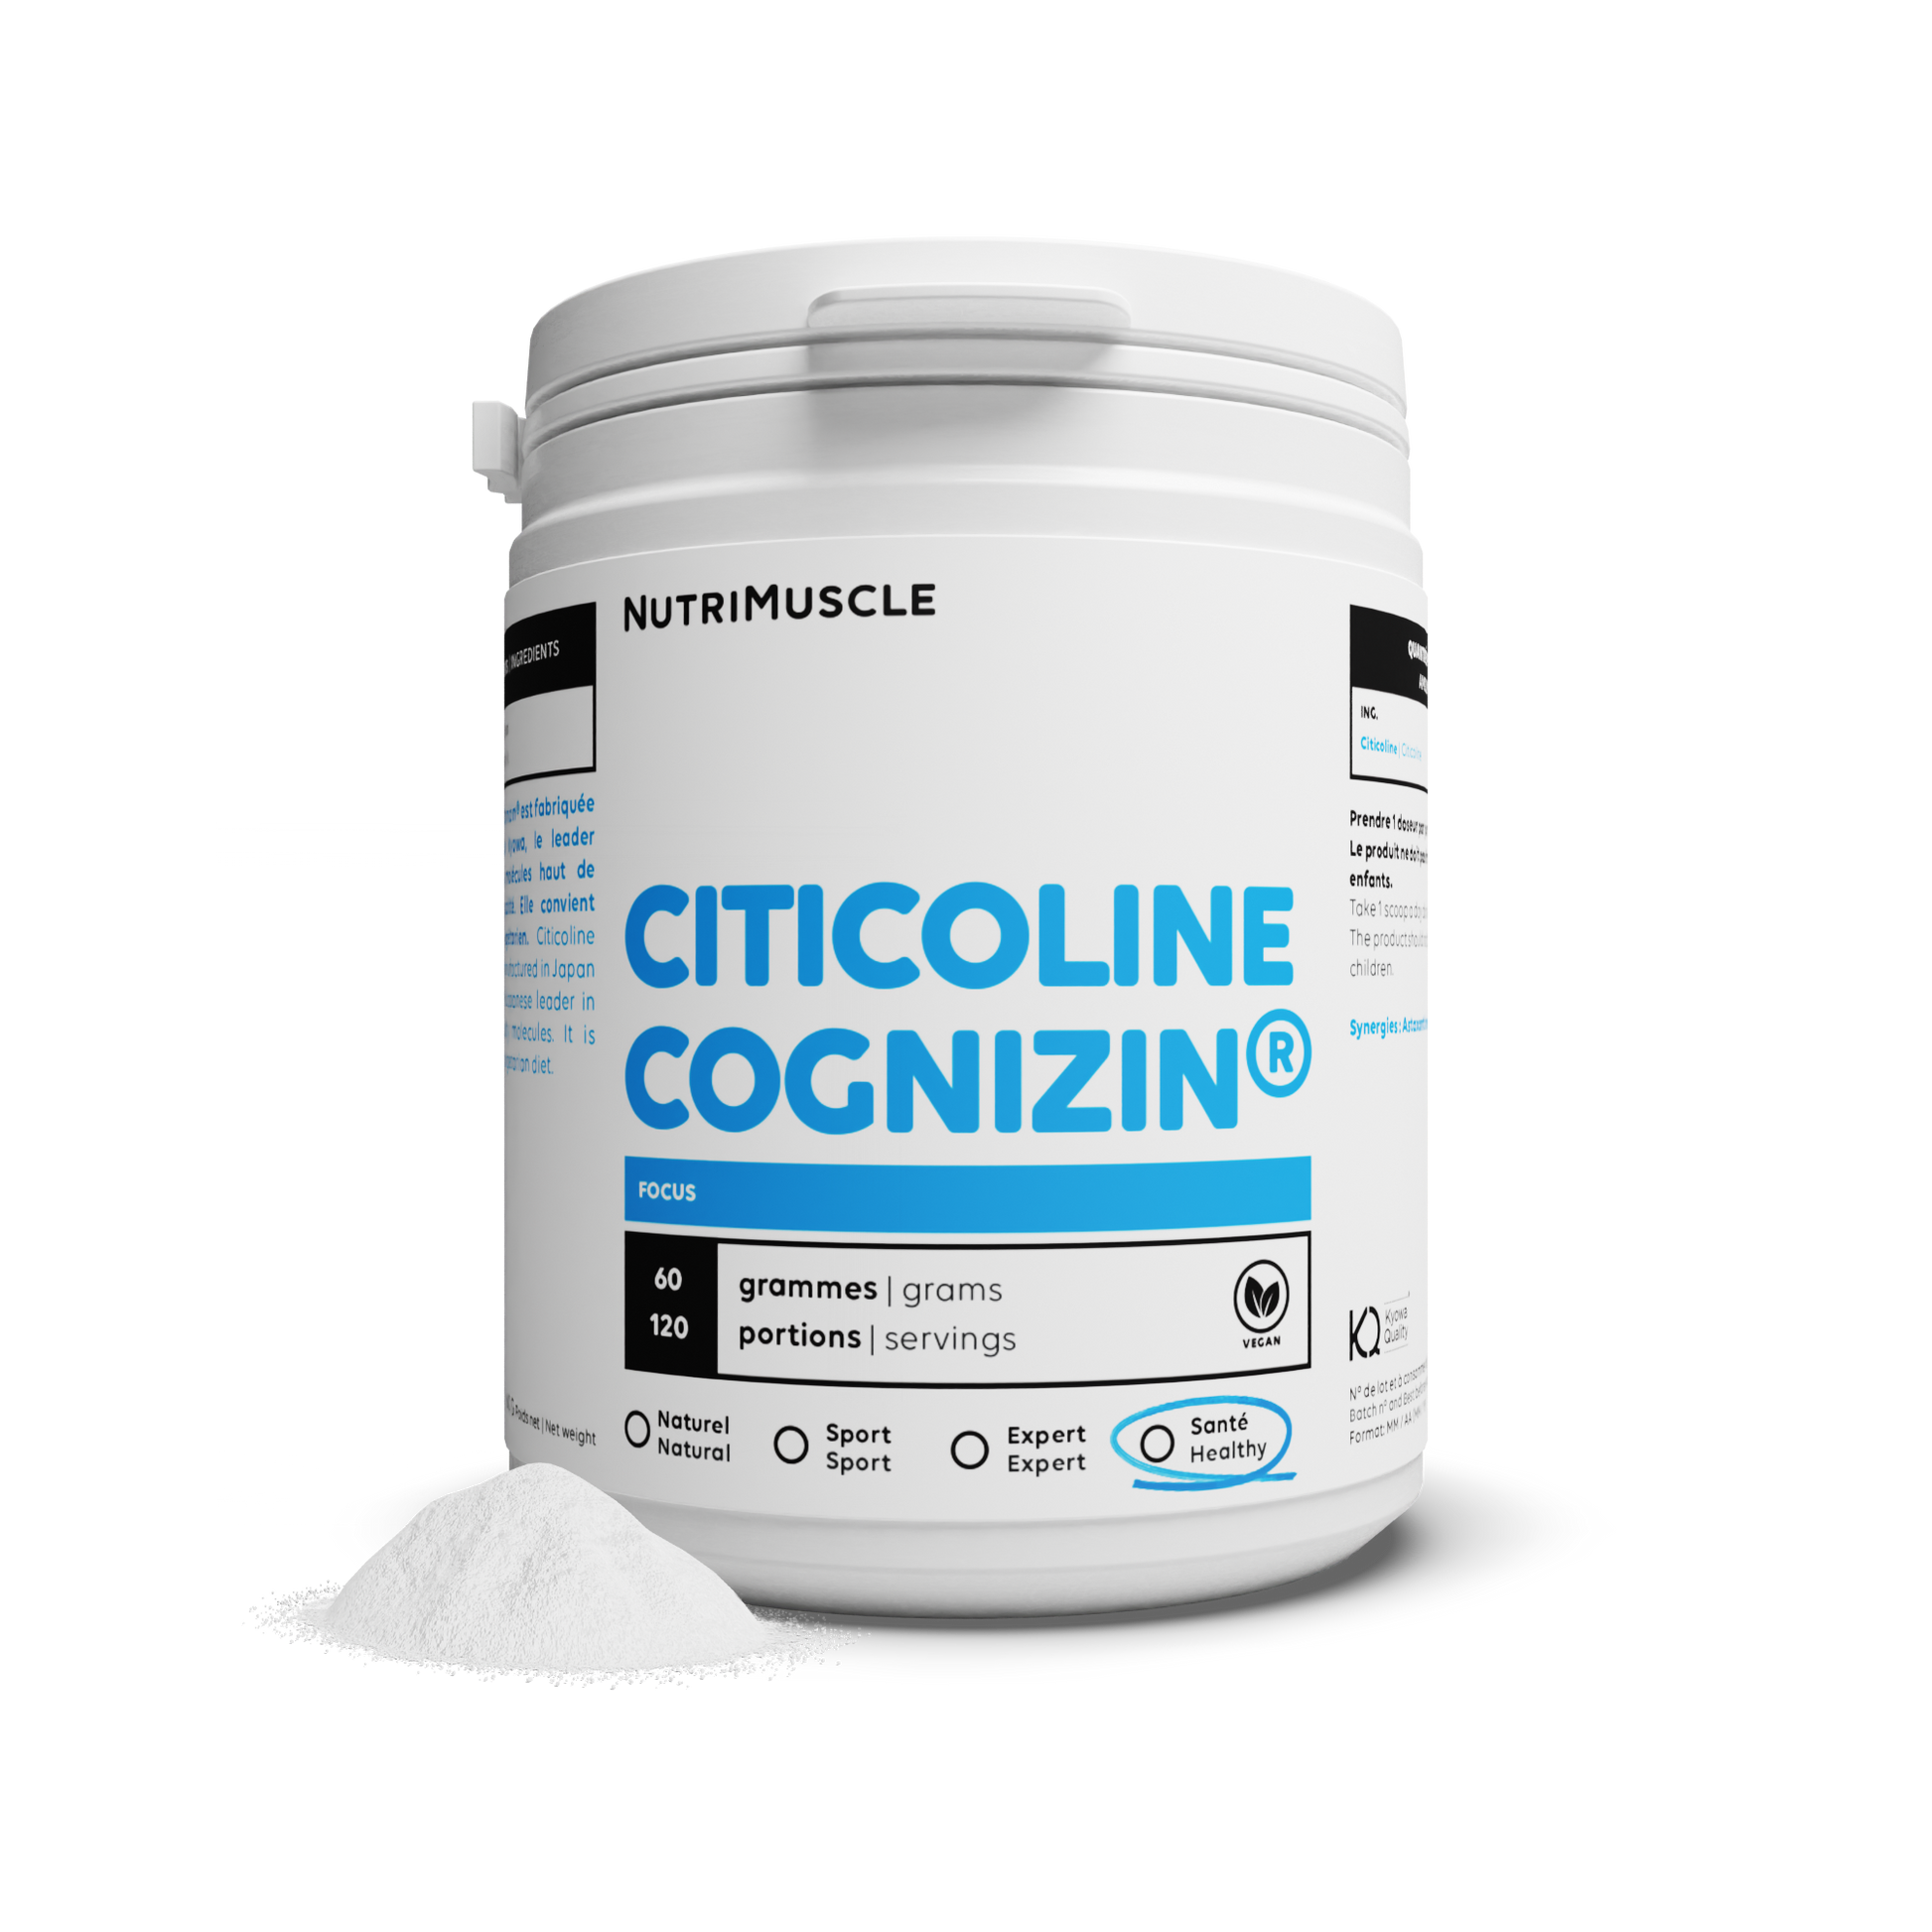 Citicolic (cdp-choline) in powder